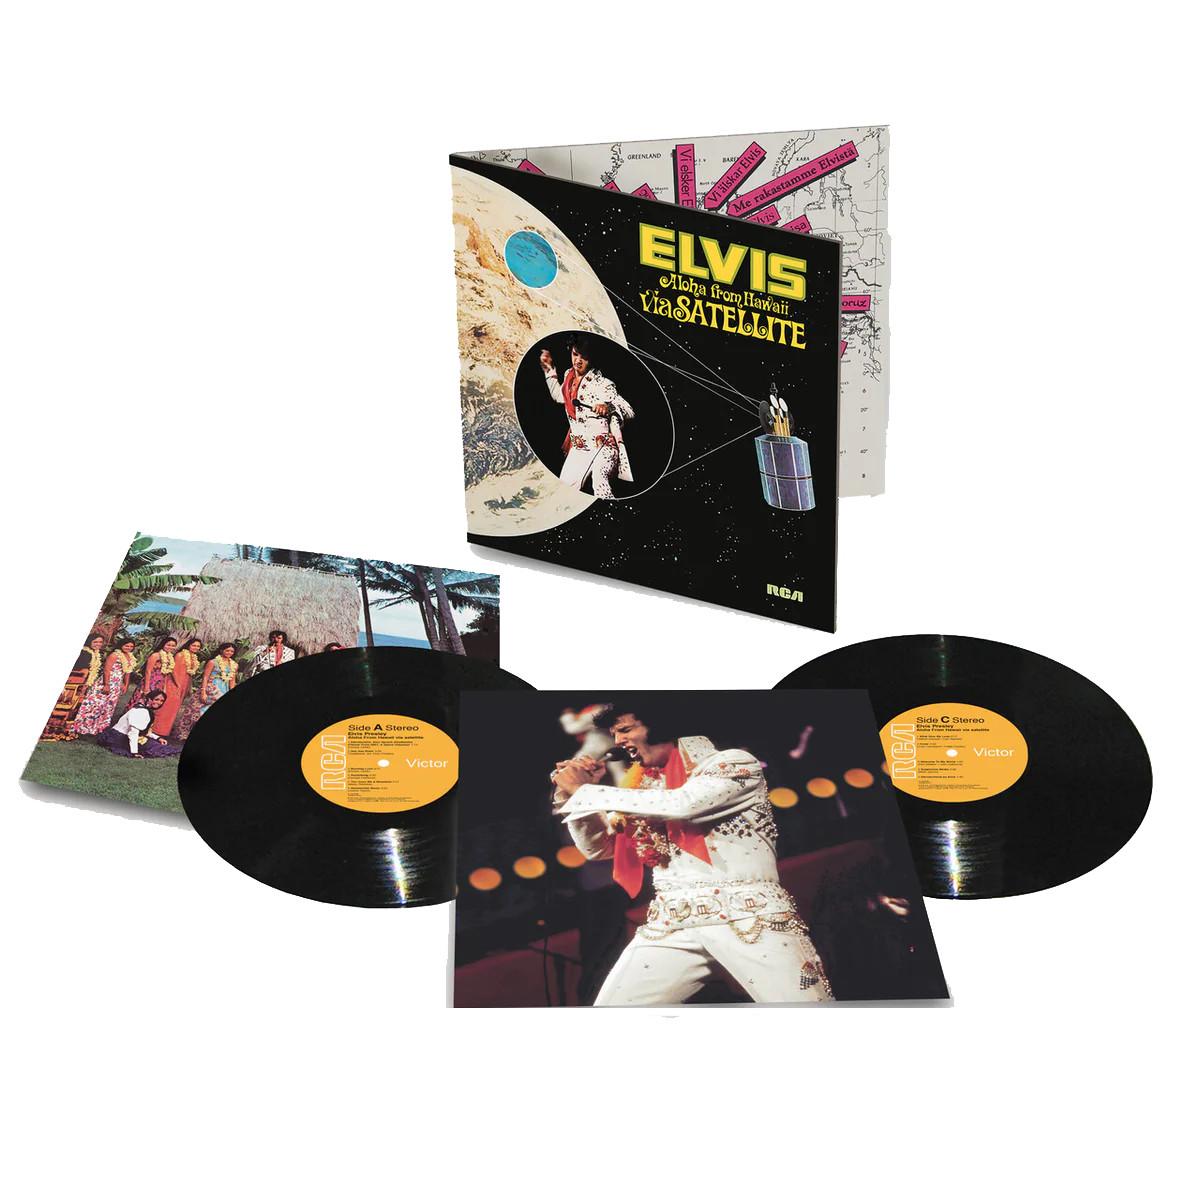 Politistation hjælper Påstand Elvis Presley - Aloha from Hawaii via Satellite: Vinyl 2LP - Sound of Vinyl